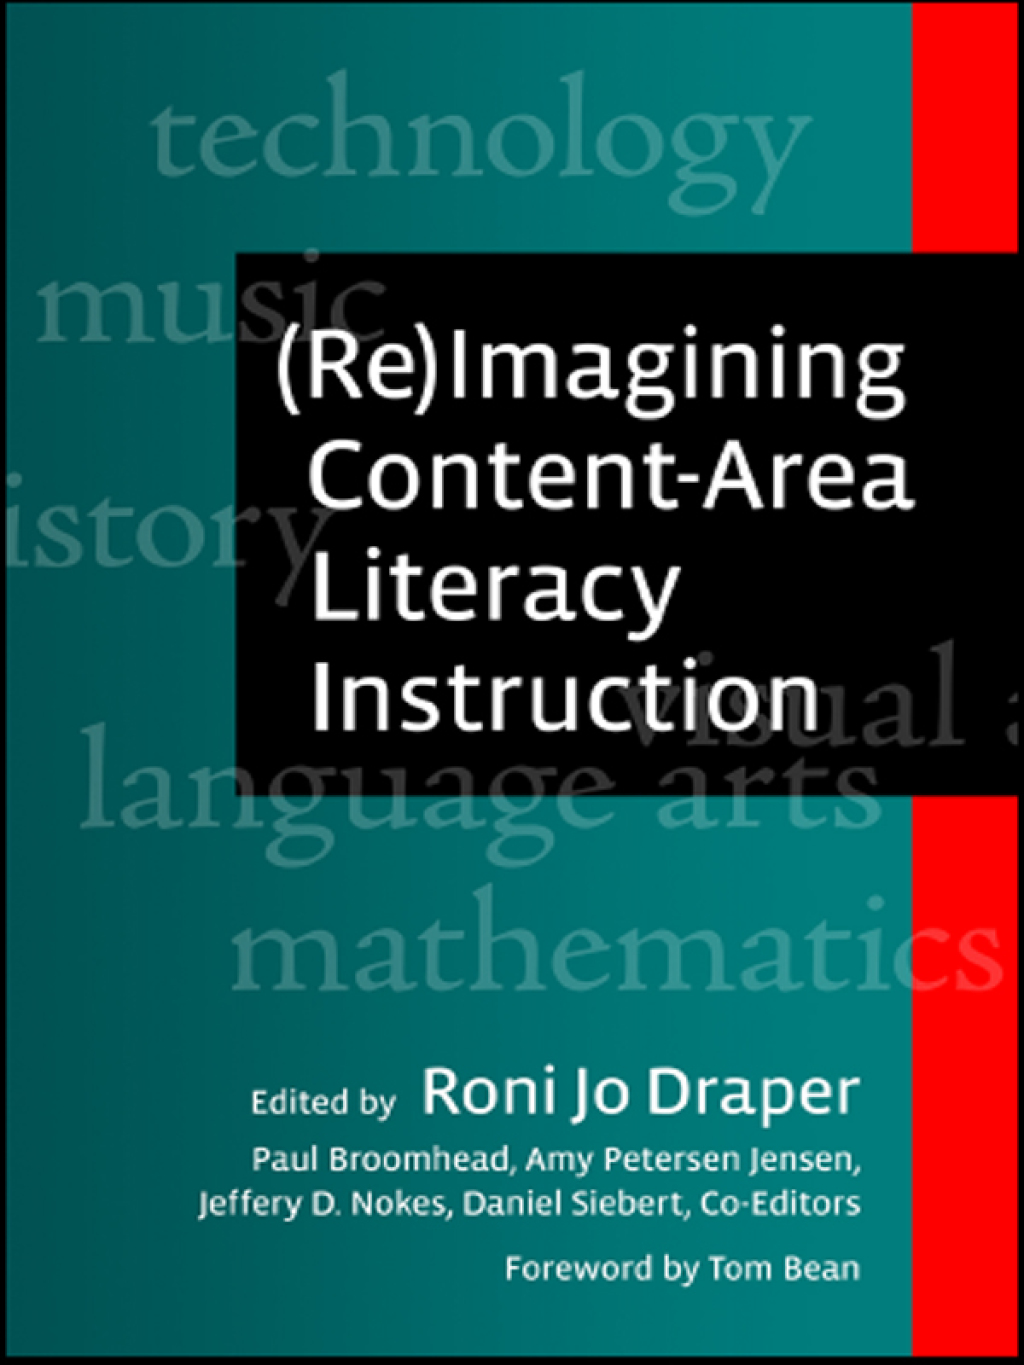 (Re)Imagining Content-Area Literacy Instruction (eBook) - Roni Jo Draper;  Paul Broomhead;  Amy Peterson Jensen;  Daniel Siebert;  Jeffrey D. Nokes,